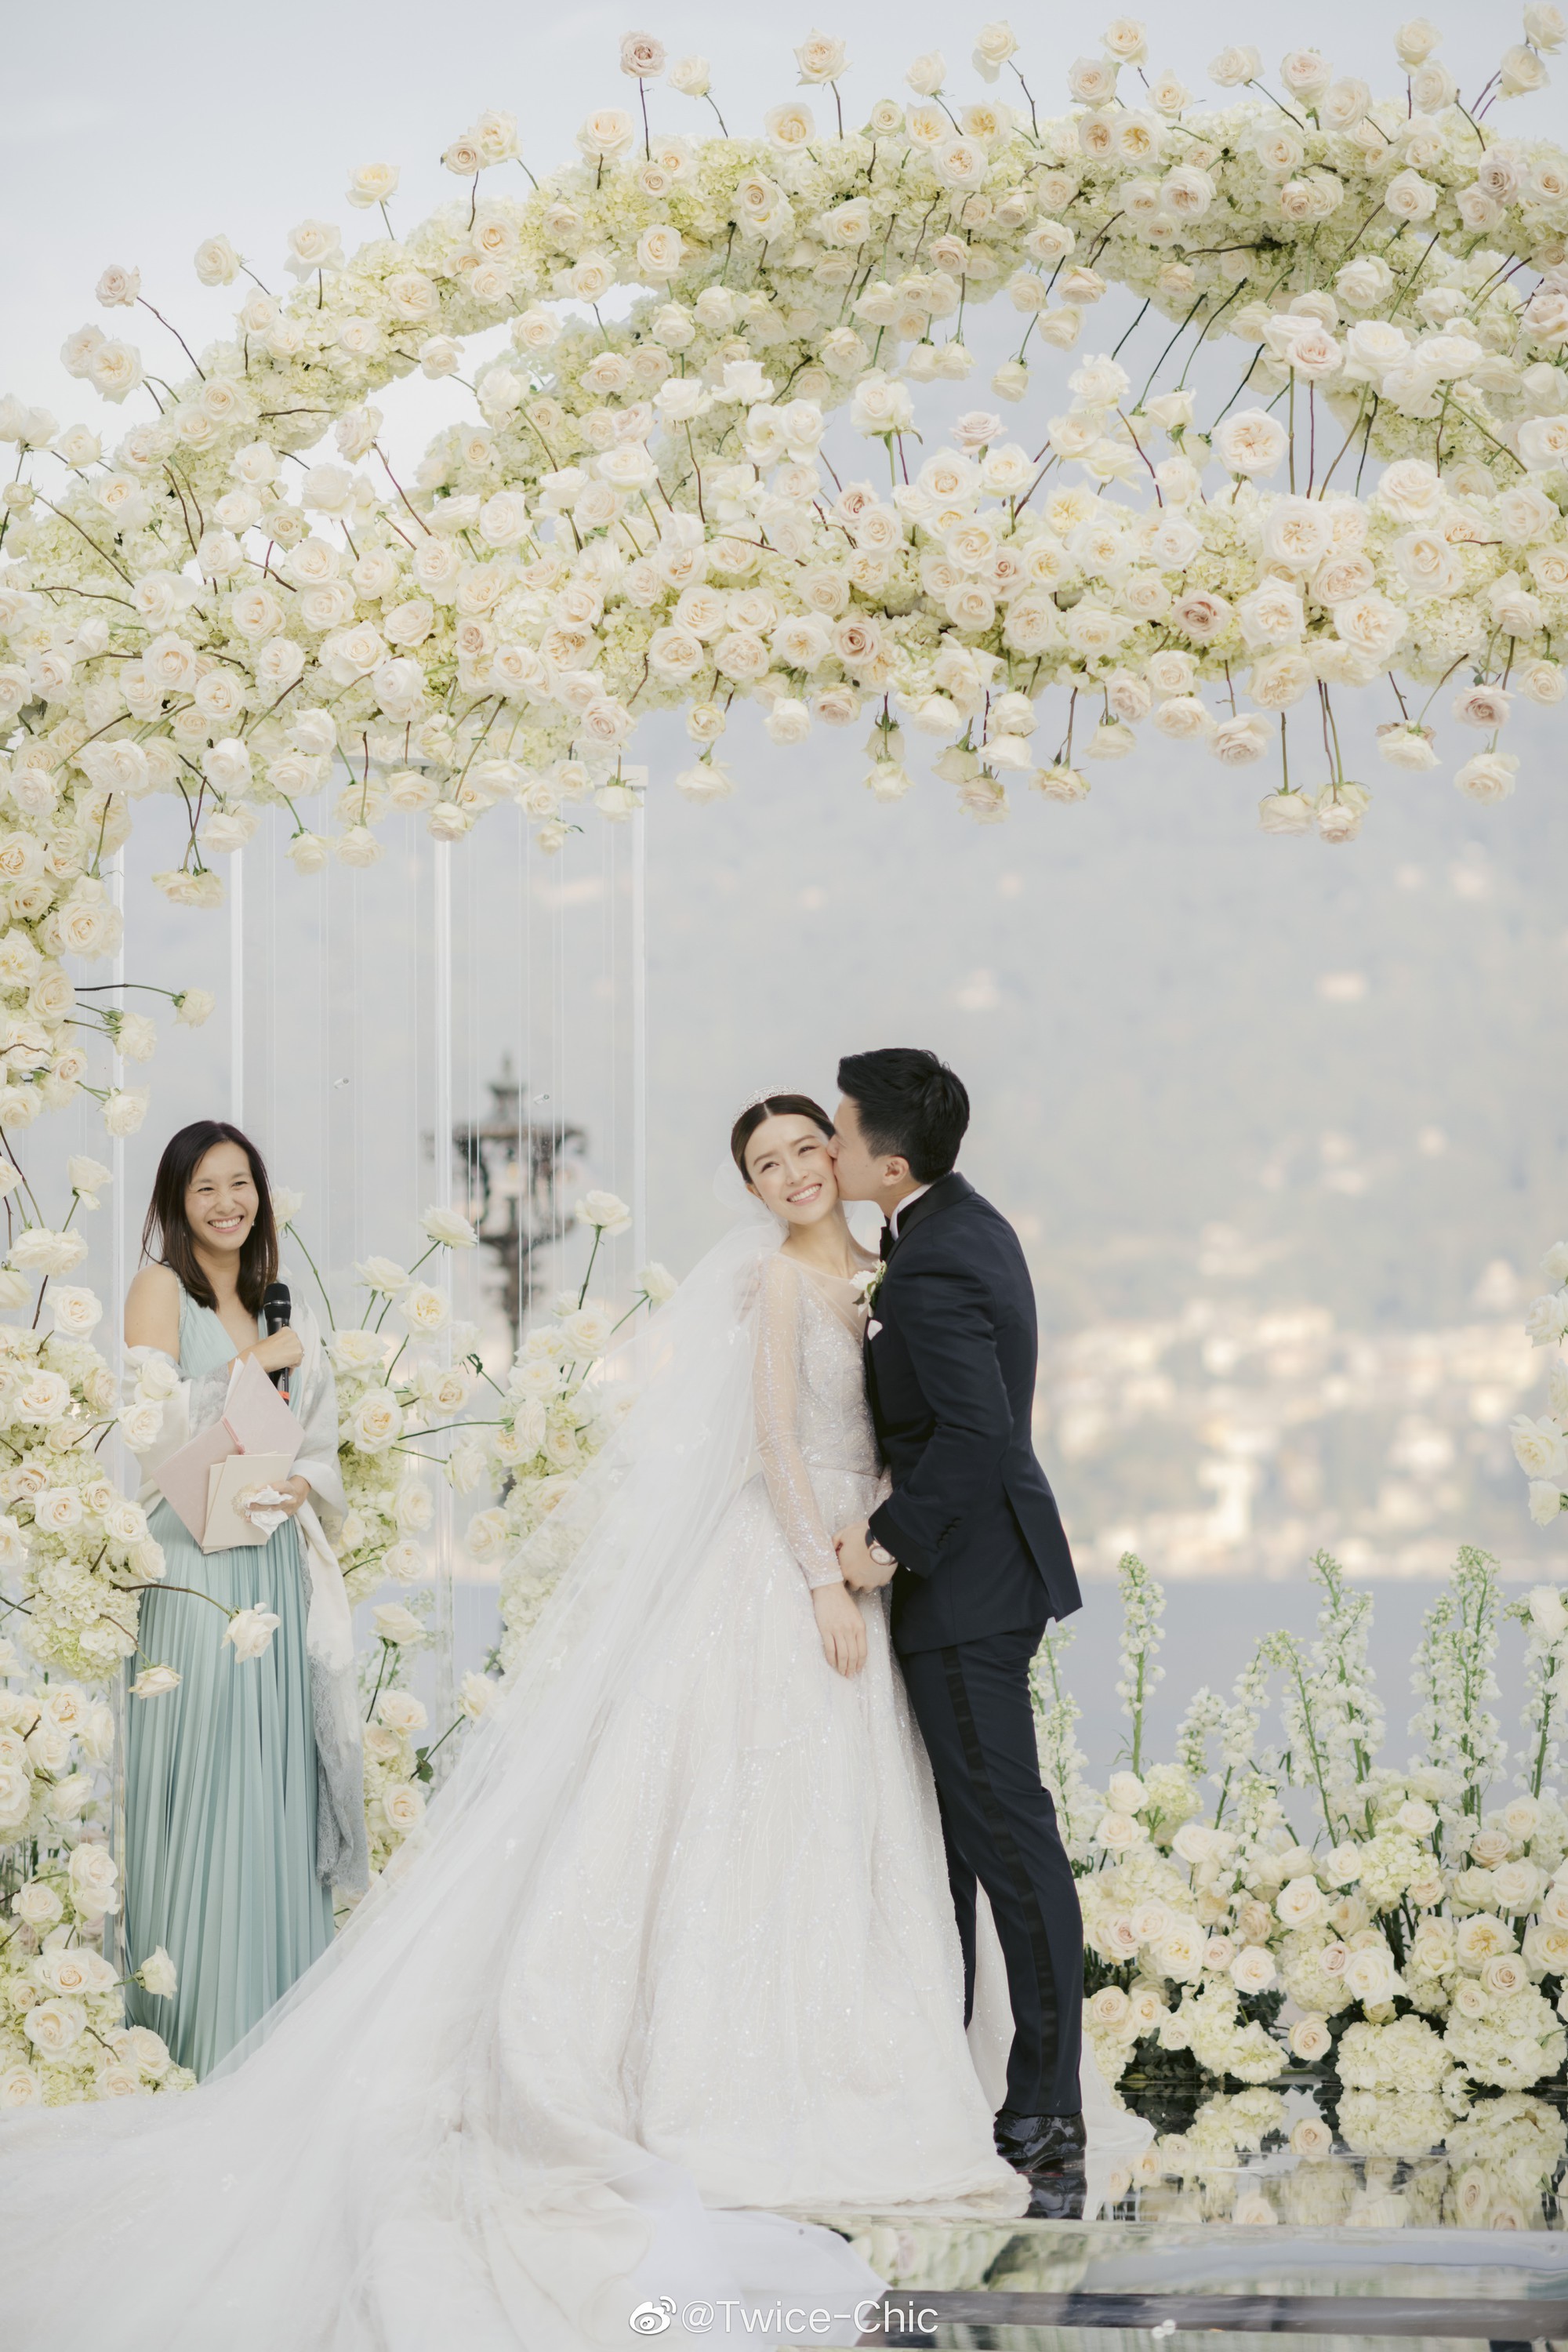 Váy cưới của Văn Vịnh San trong hôn lễ với chồng đại gia: chiếc lộng lẫy xa hoa, chiếc siêu to khổng lồ với mức giá trên trời gây choáng - Ảnh 1.